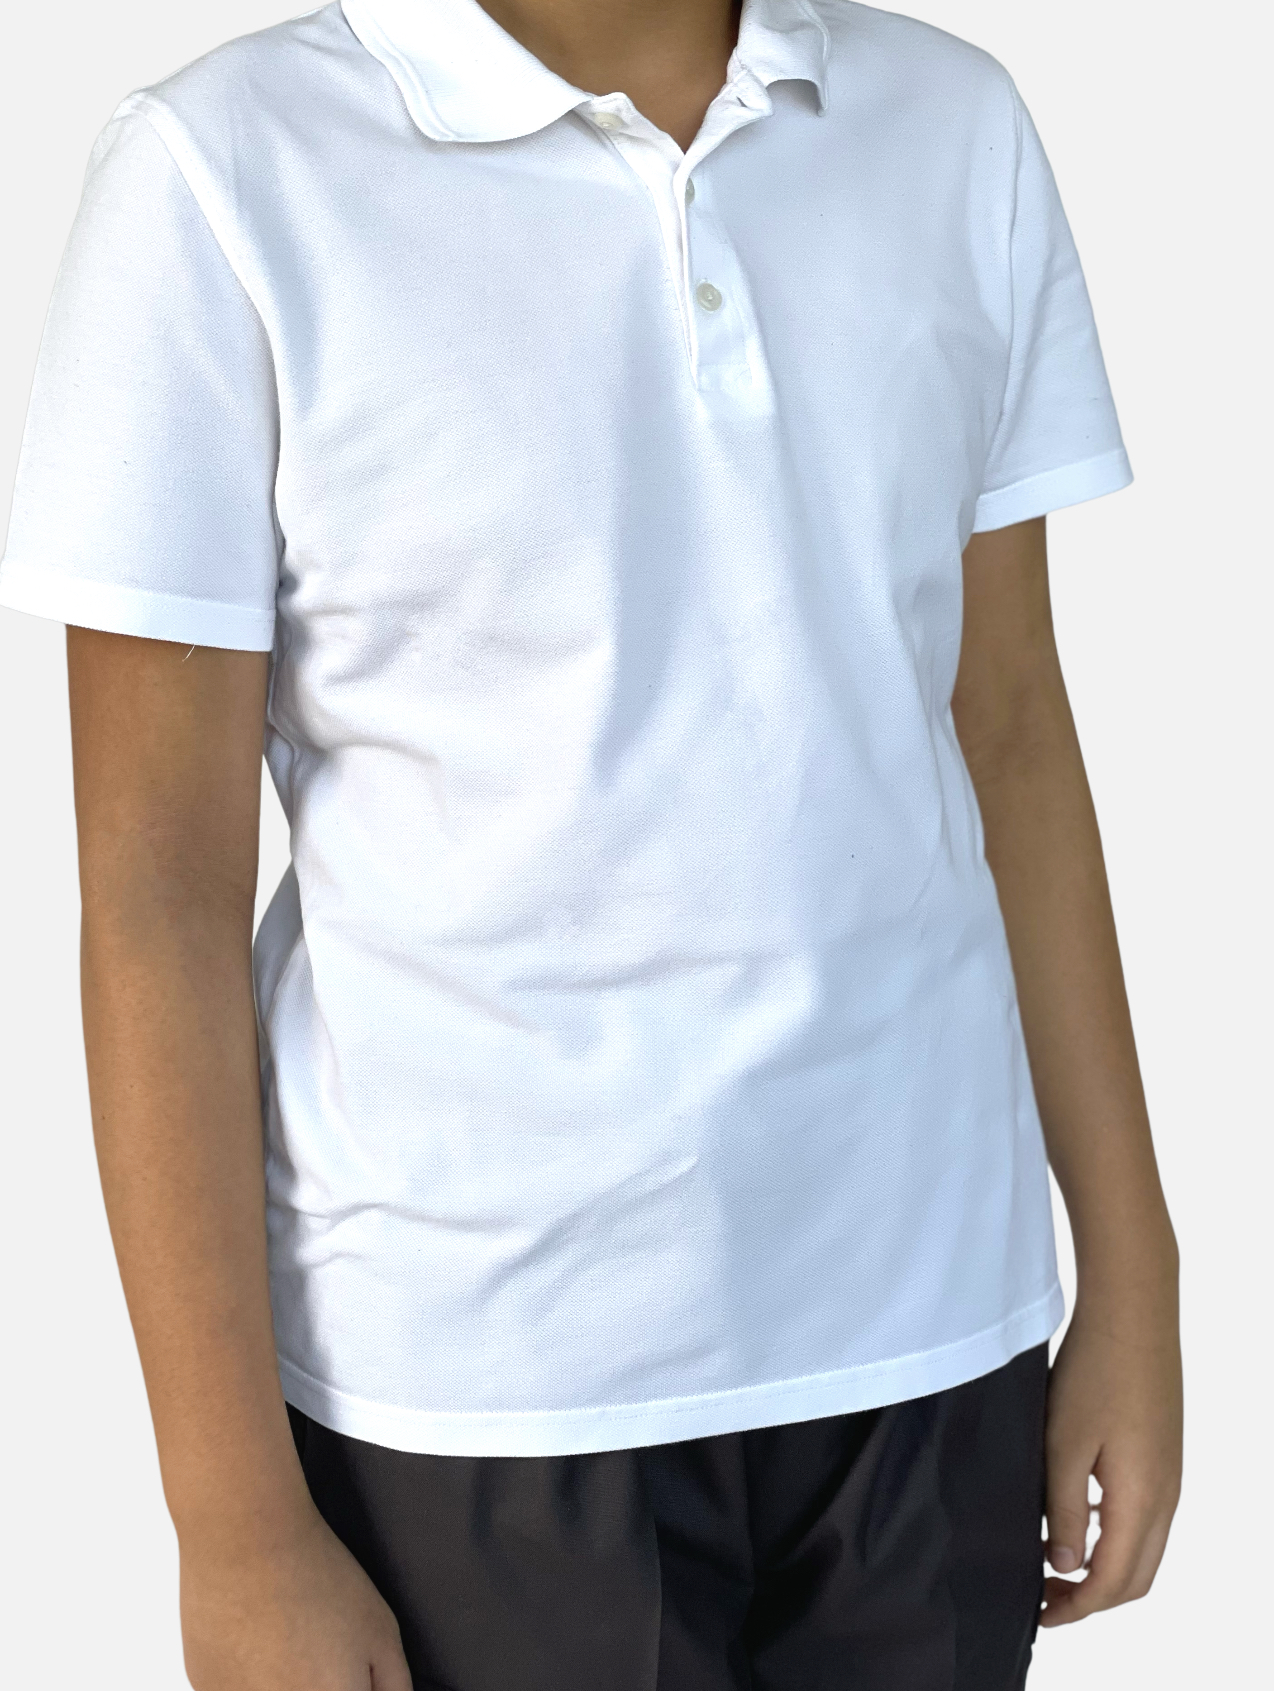 Plain White Tshirt Kids Sizes